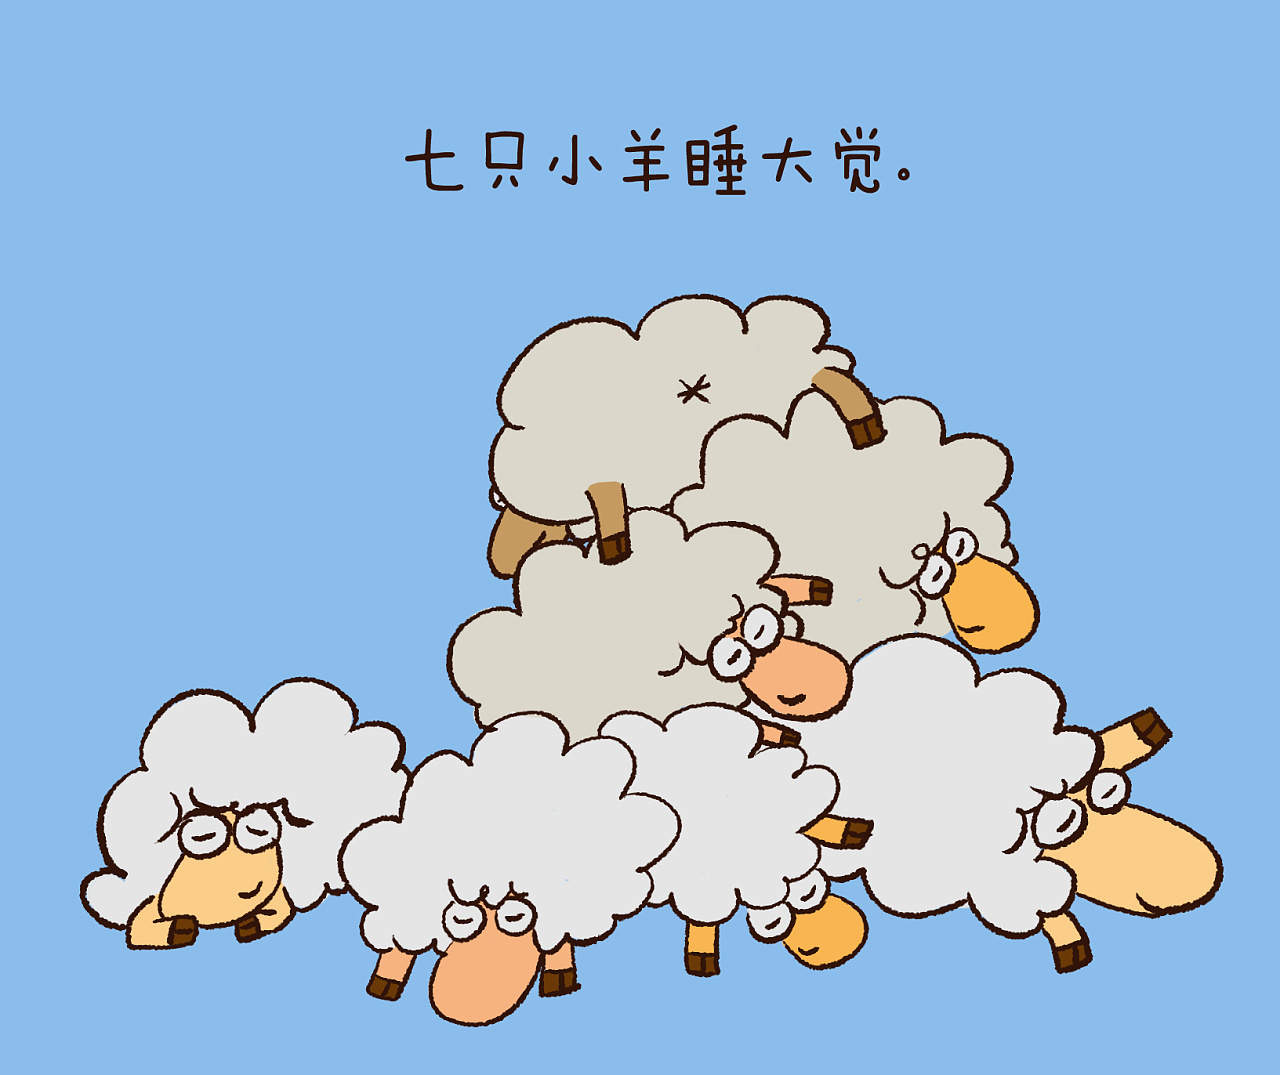 一天一故事—数羊